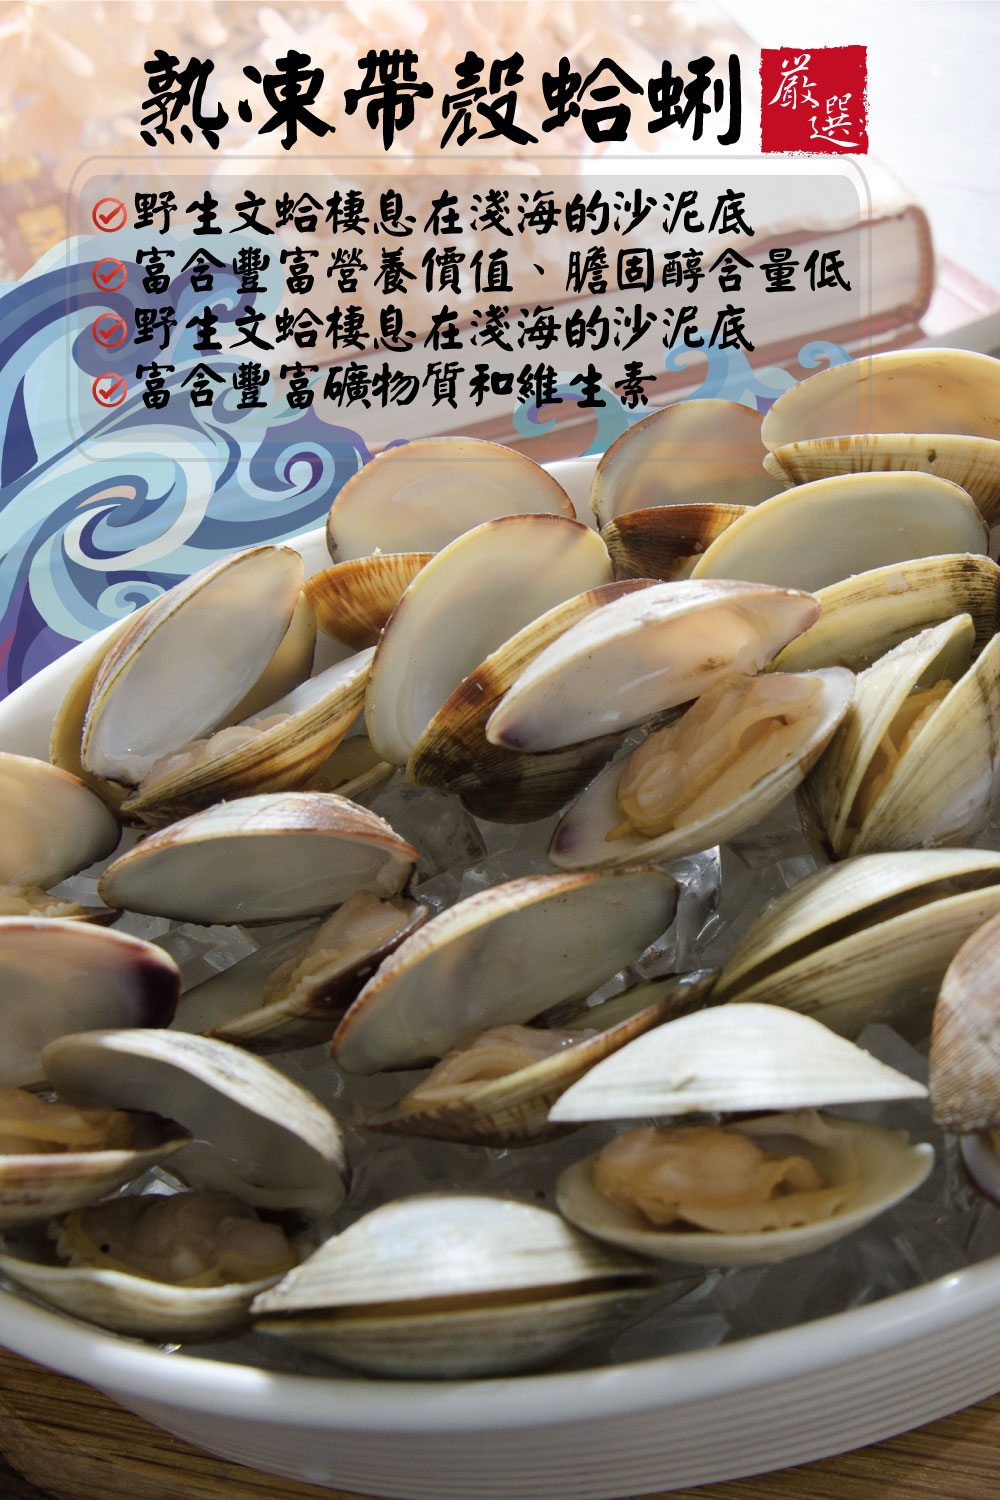       【鮮綠生活】嚴選大顆熟凍蛤蜊(500g±10%/包 共9包)